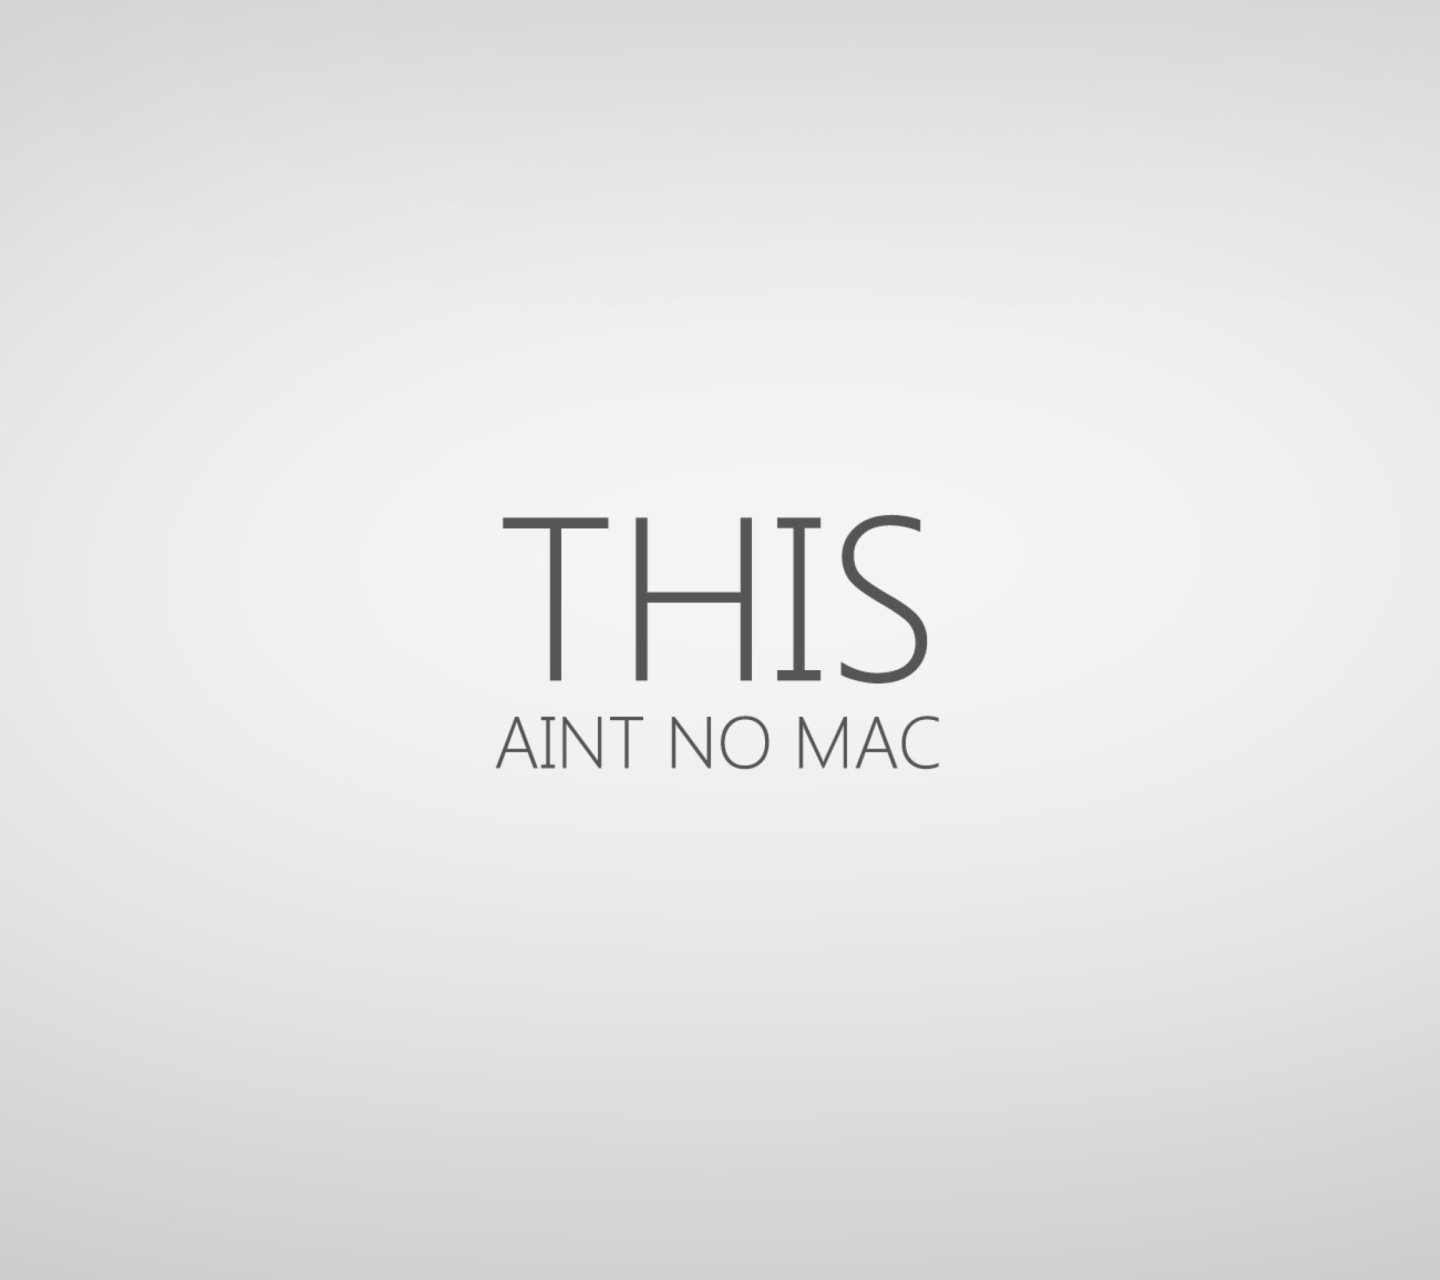 Das This Aint No Mac Wallpaper 1440x1280